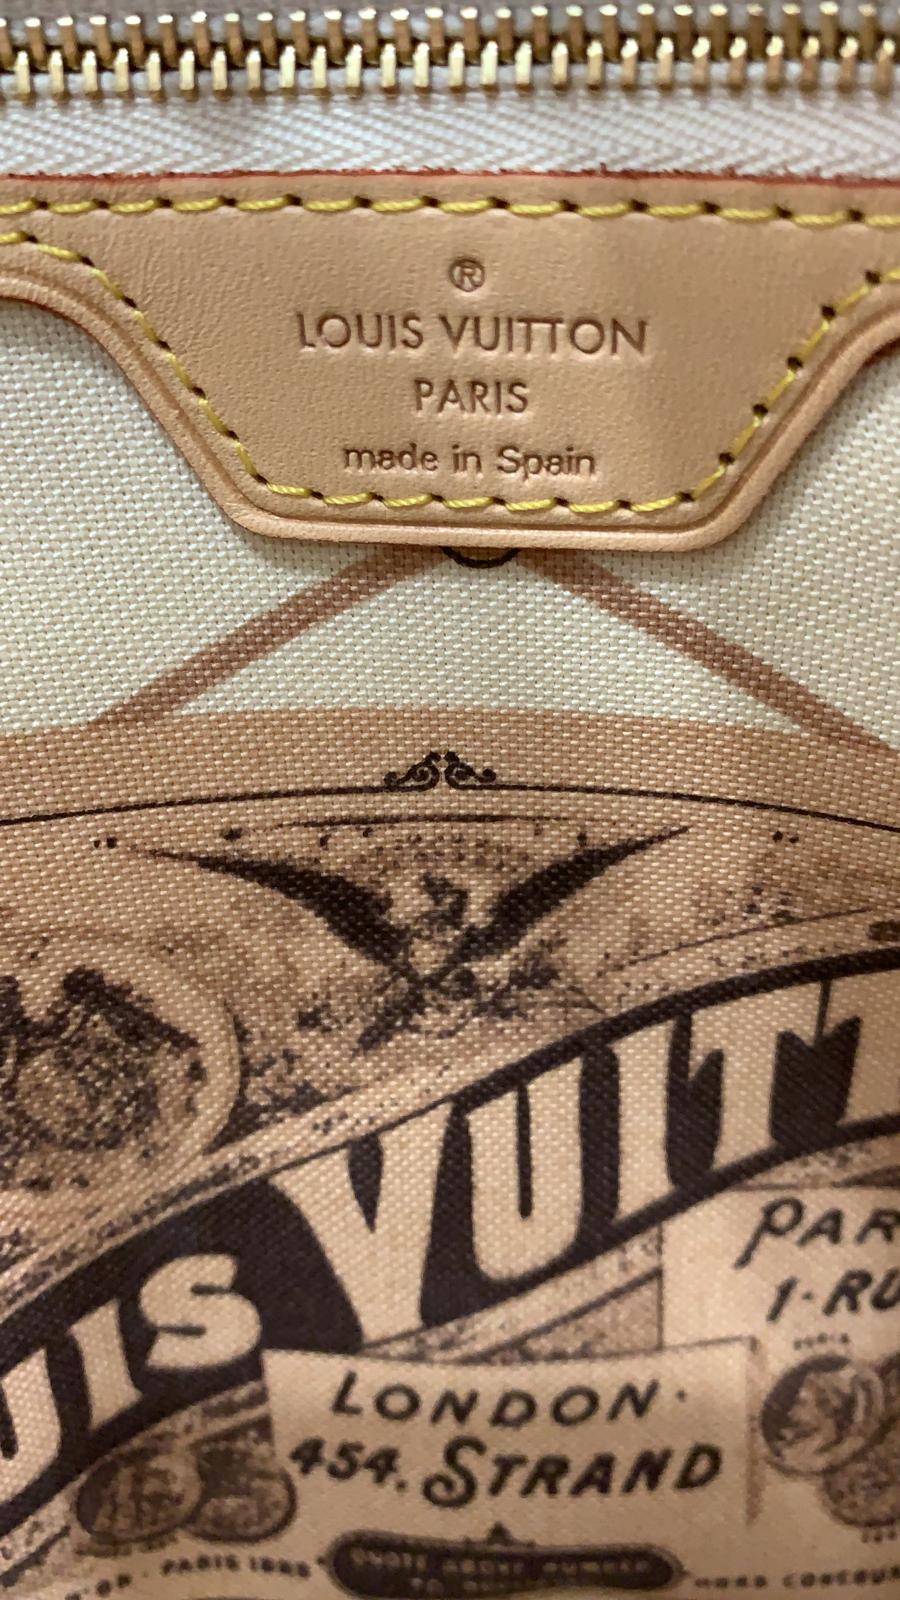 Louis Vuitton Neverfull MM Summer Trunk Damier Azur Bag